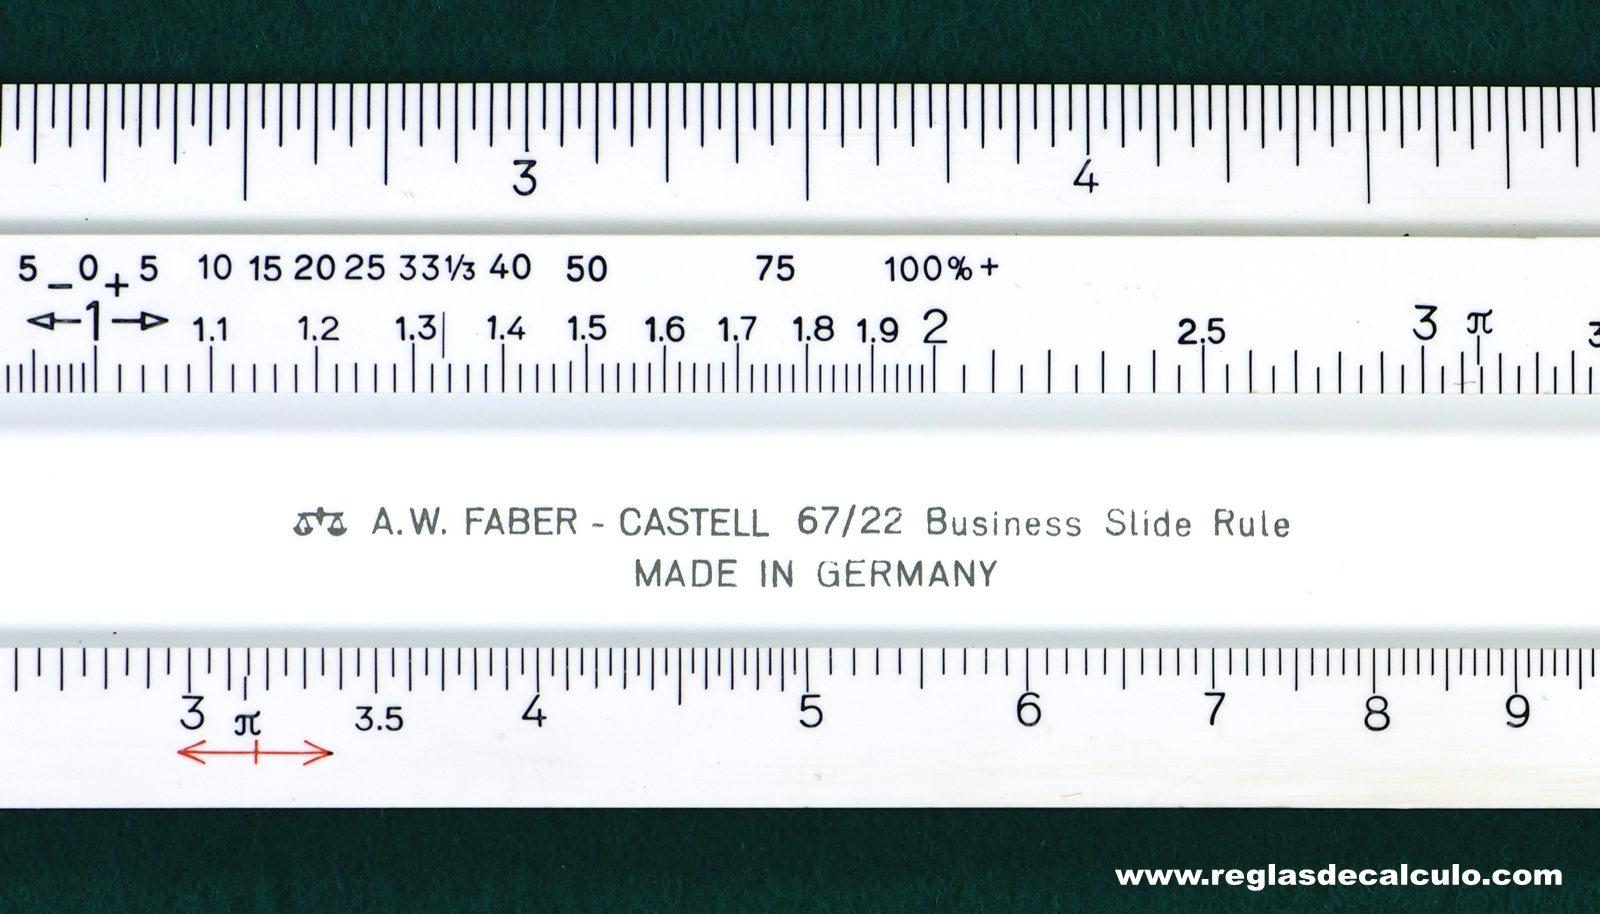 Faber Castell 67/22 Disponent Regla de Calculo Slide rule